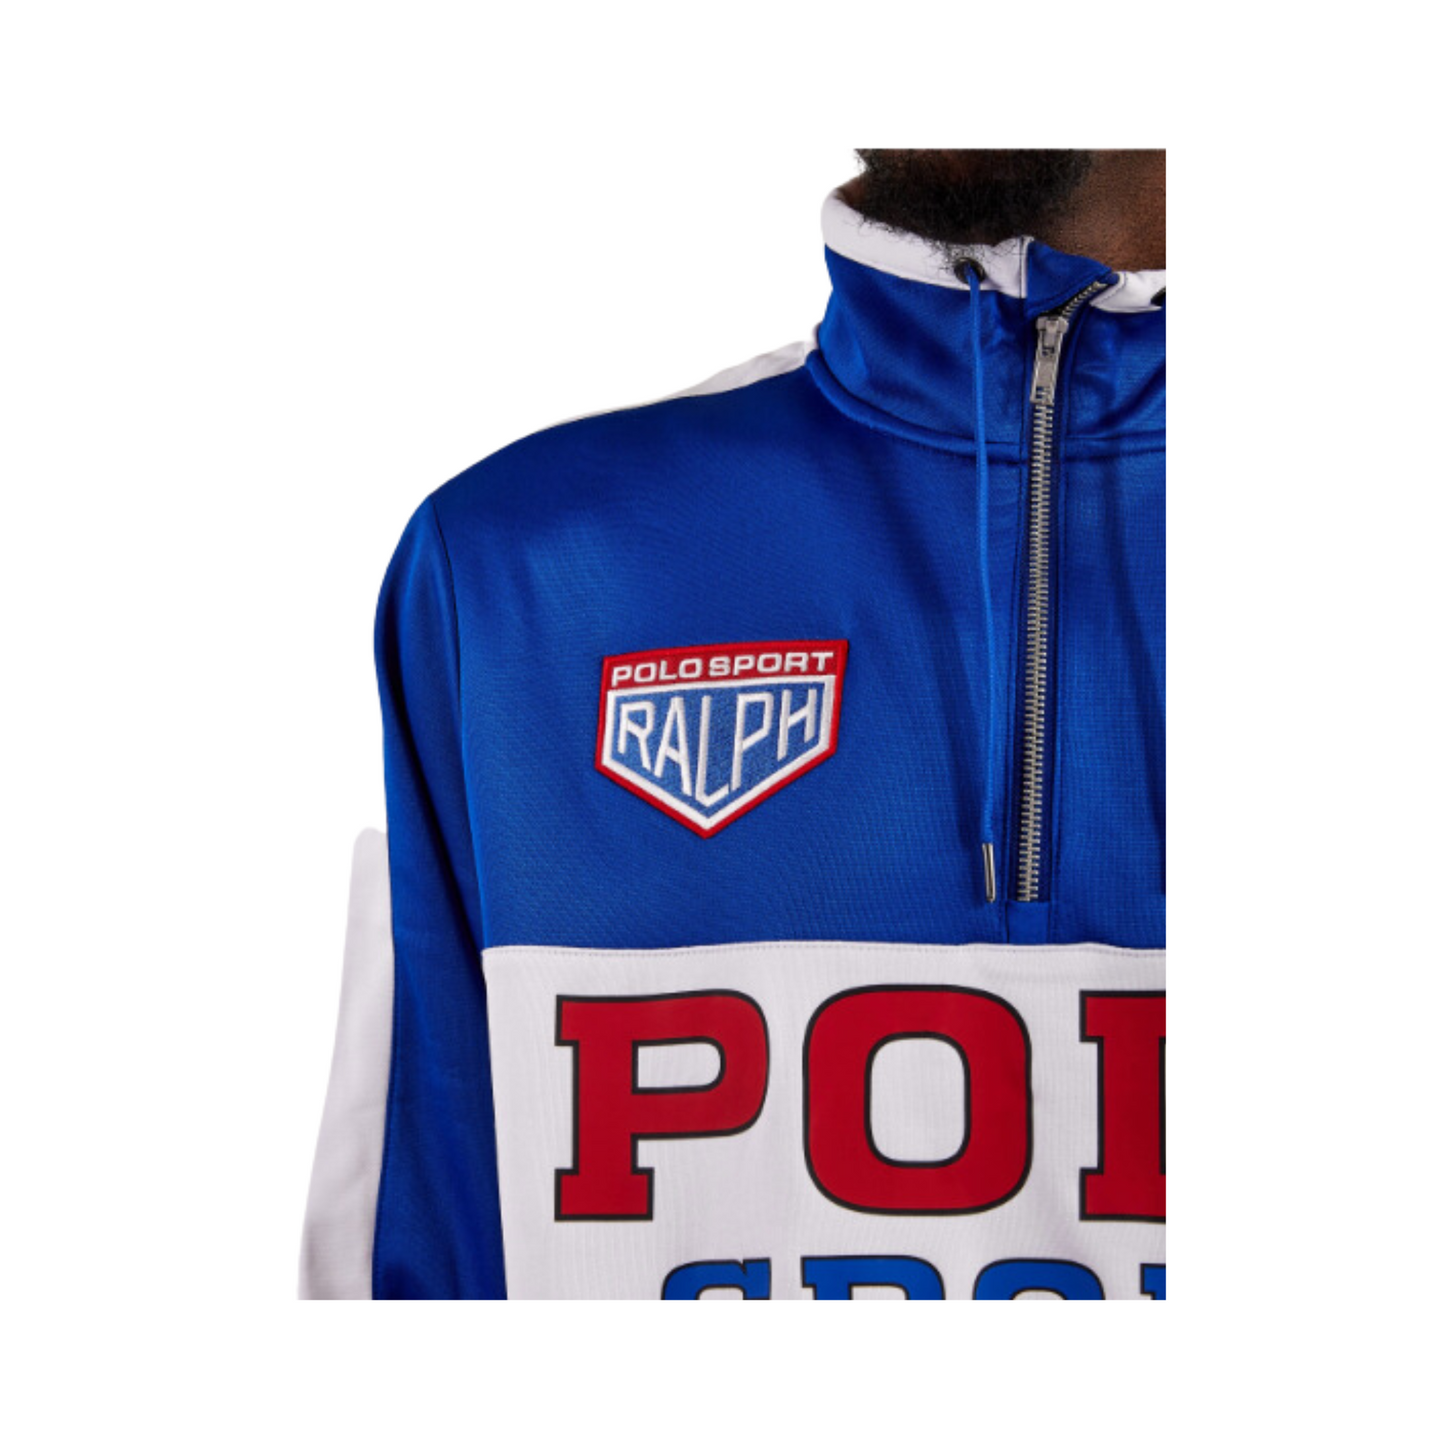 RALPH LAUREN Polo Sport Fleece Sweatshirt